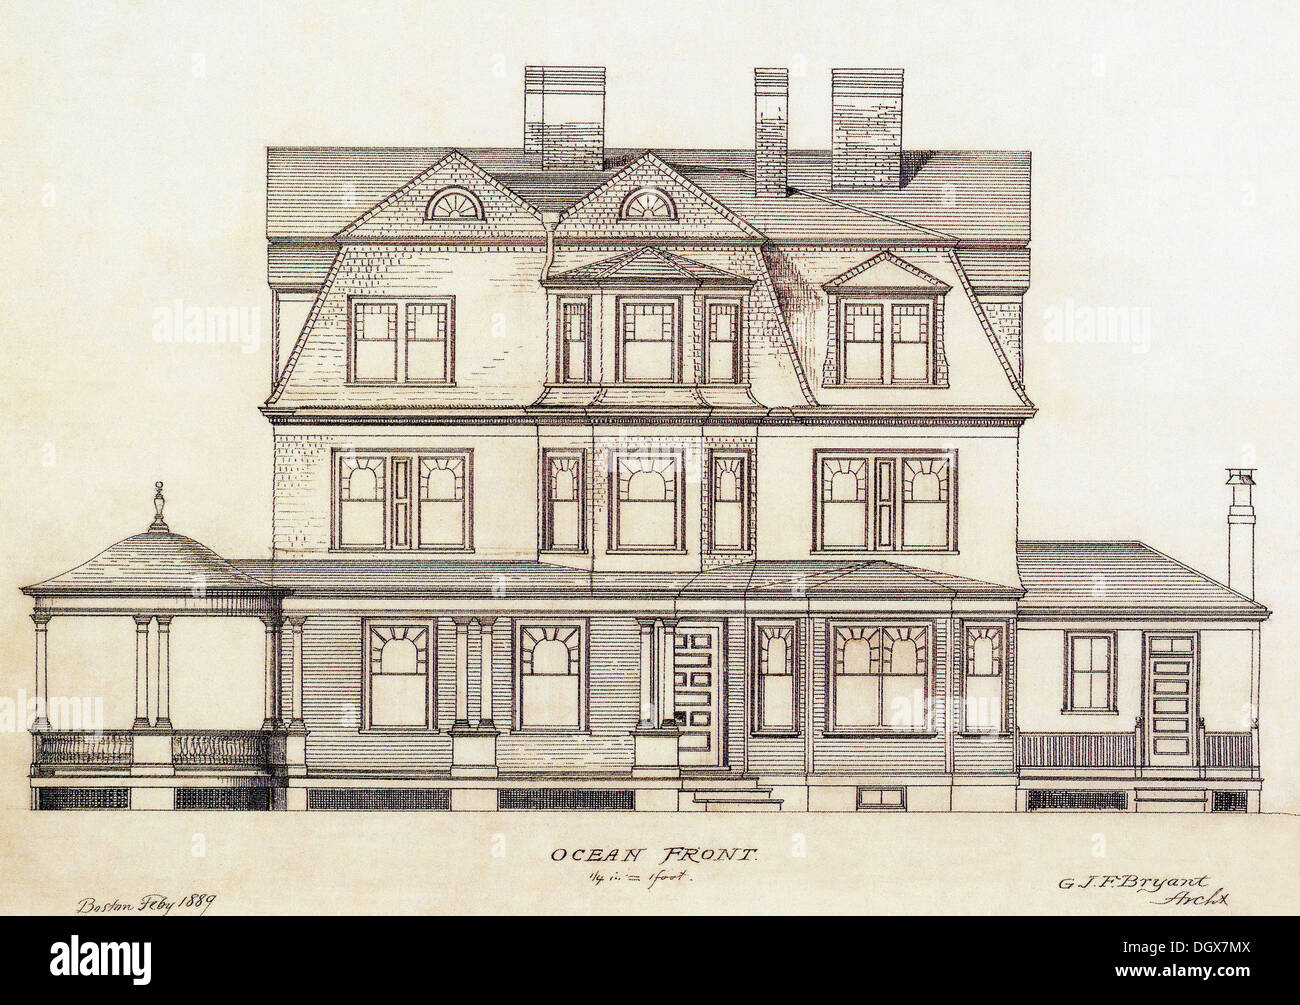 Plan de maison historique, USA, 1889 Banque D'Images